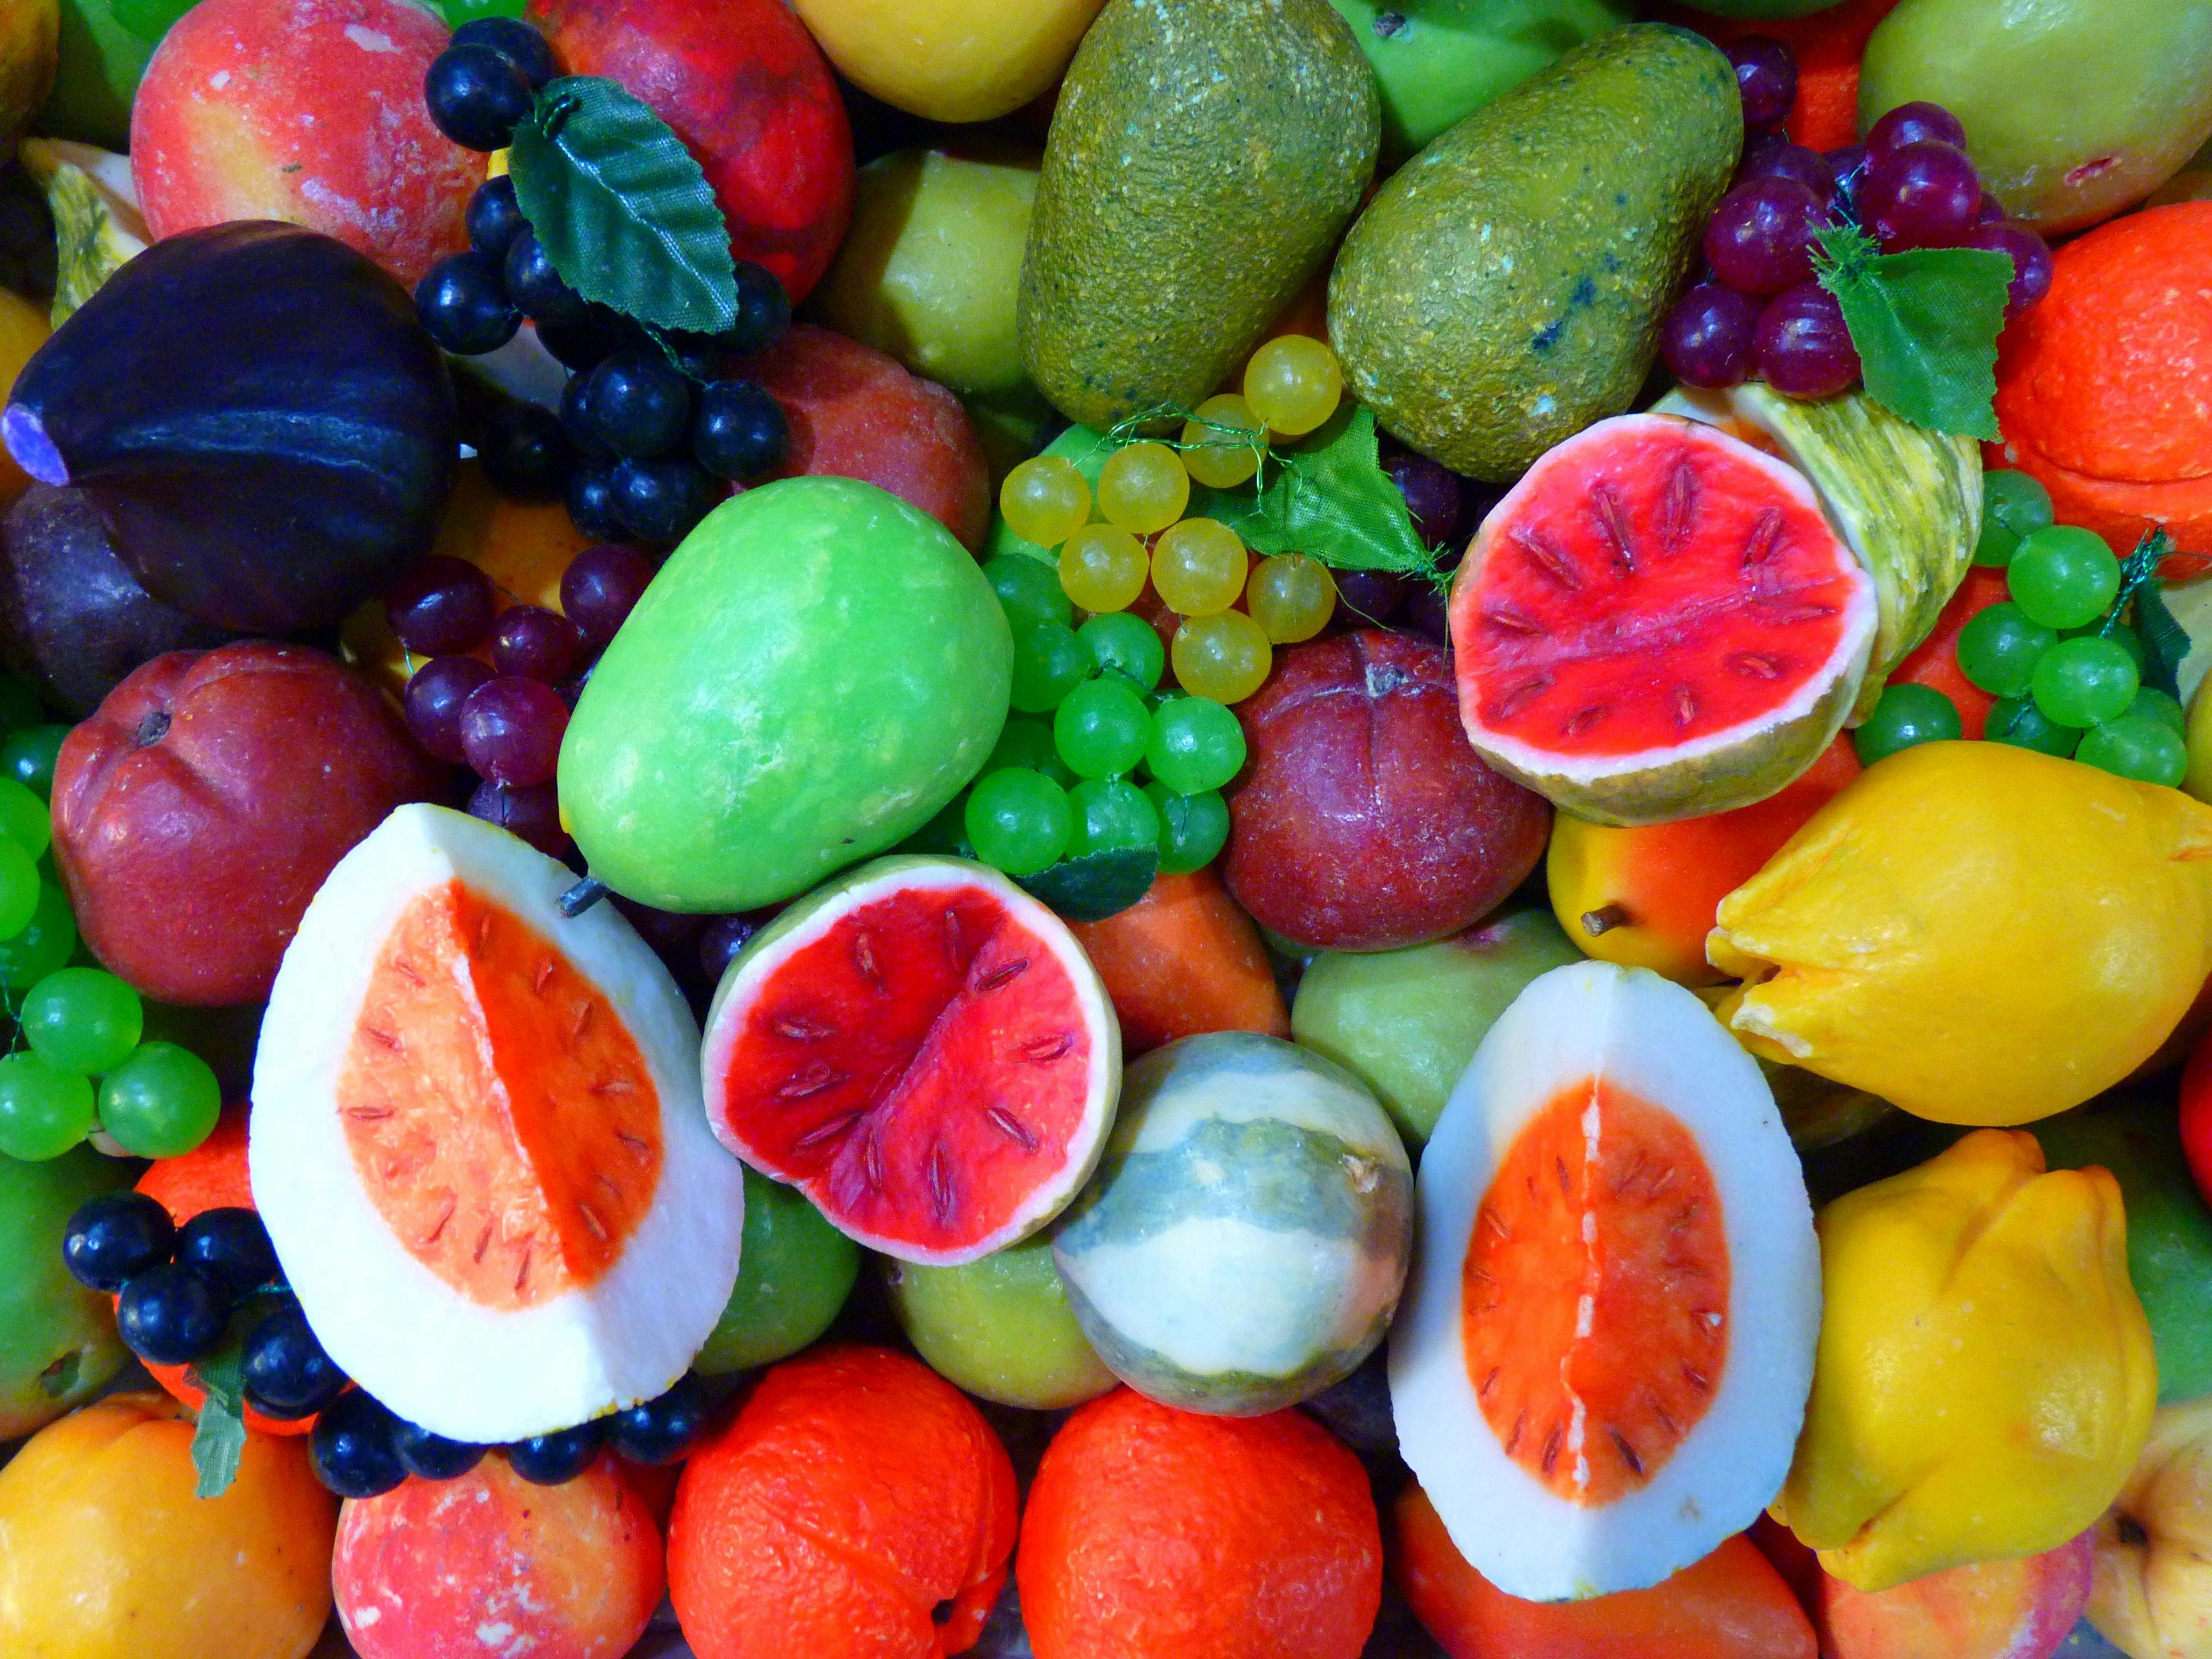 Đừng bỏ qua cơ hội được thưởng thức vẻ đẹp của trái cây ảnh đẹp đầy tươi mới và màu sắc! Từng hạt trái cây chứa đựng những giá trị dinh dưỡng tốt cho sức khỏe và năng lượng cho công việc. Hãy cùng thưởng thức tinh thần sáng tạo và độc đáo với trái cây ảnh đẹp ngay bây giờ!